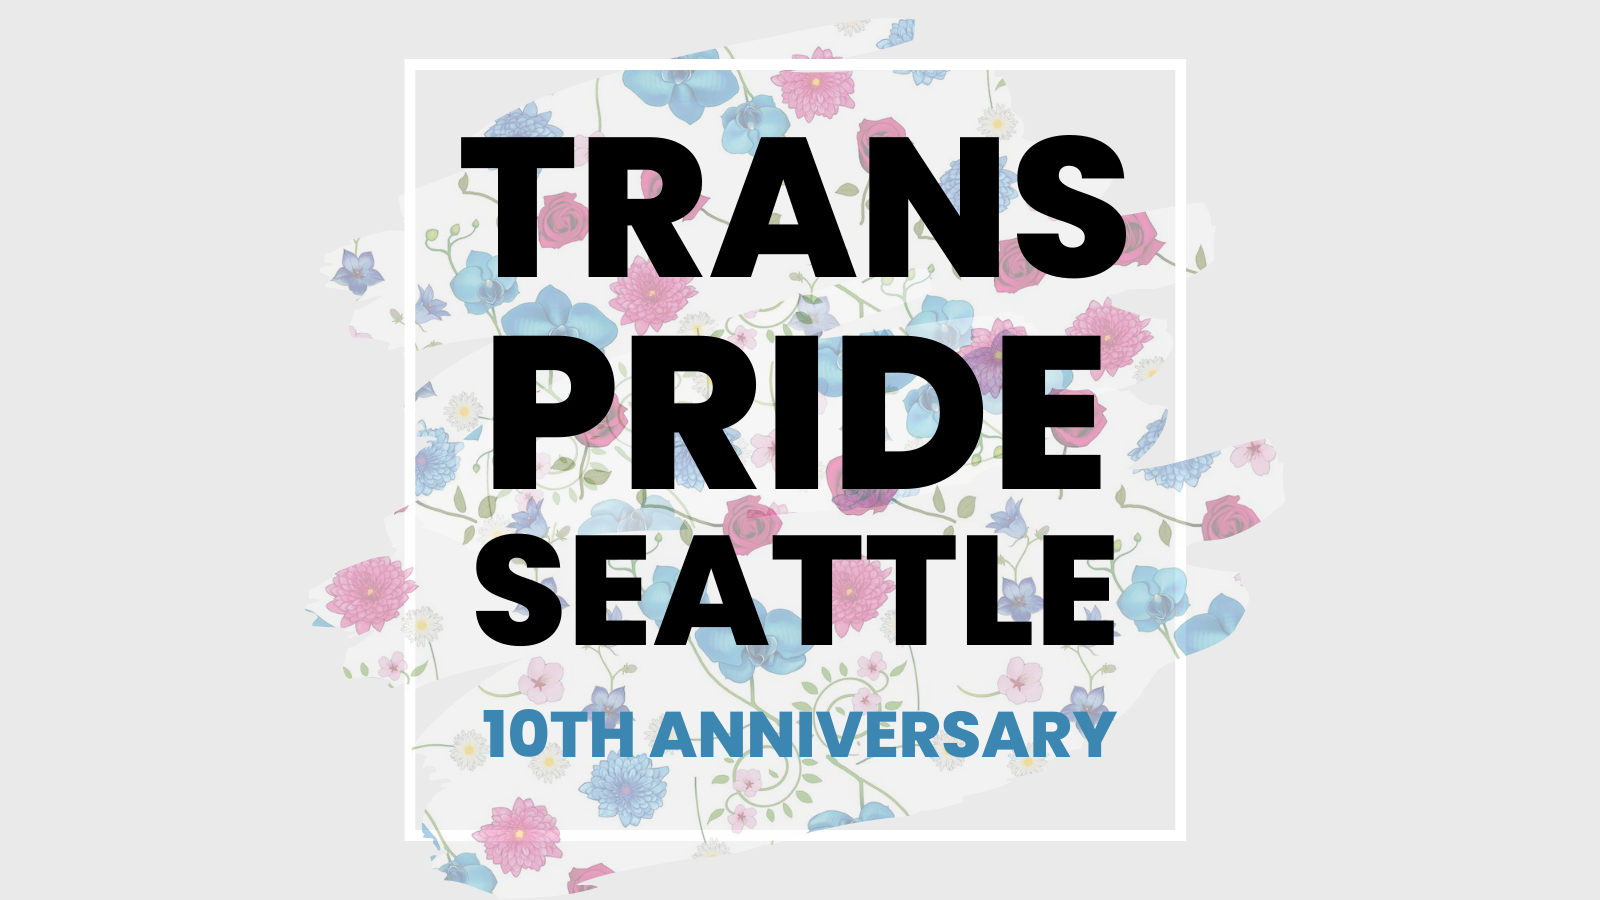 Trans Pride Seattle: 10th Anniversary